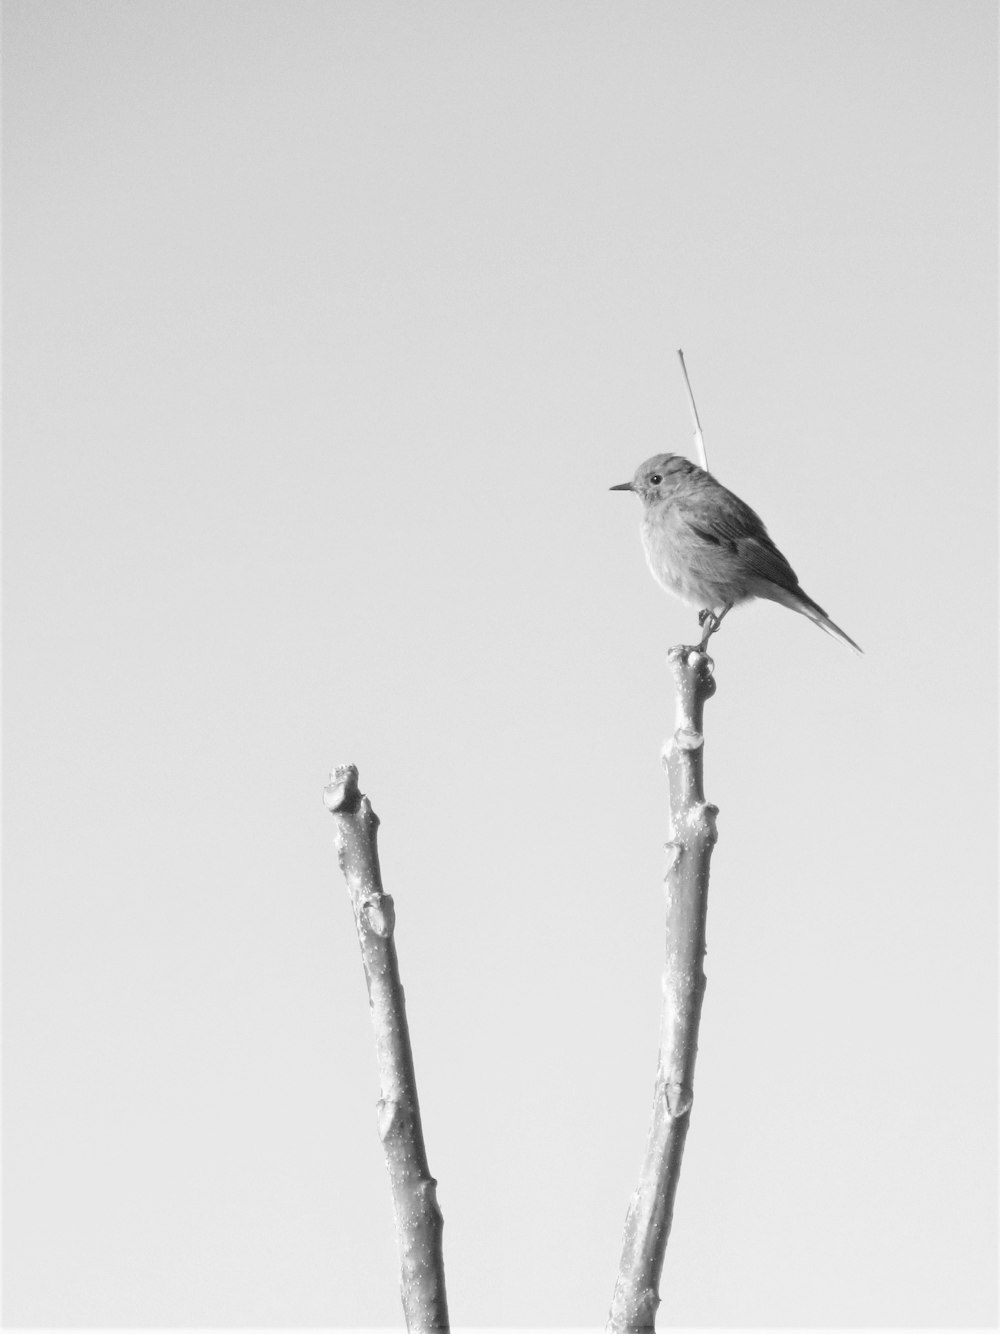 a bird on a stick